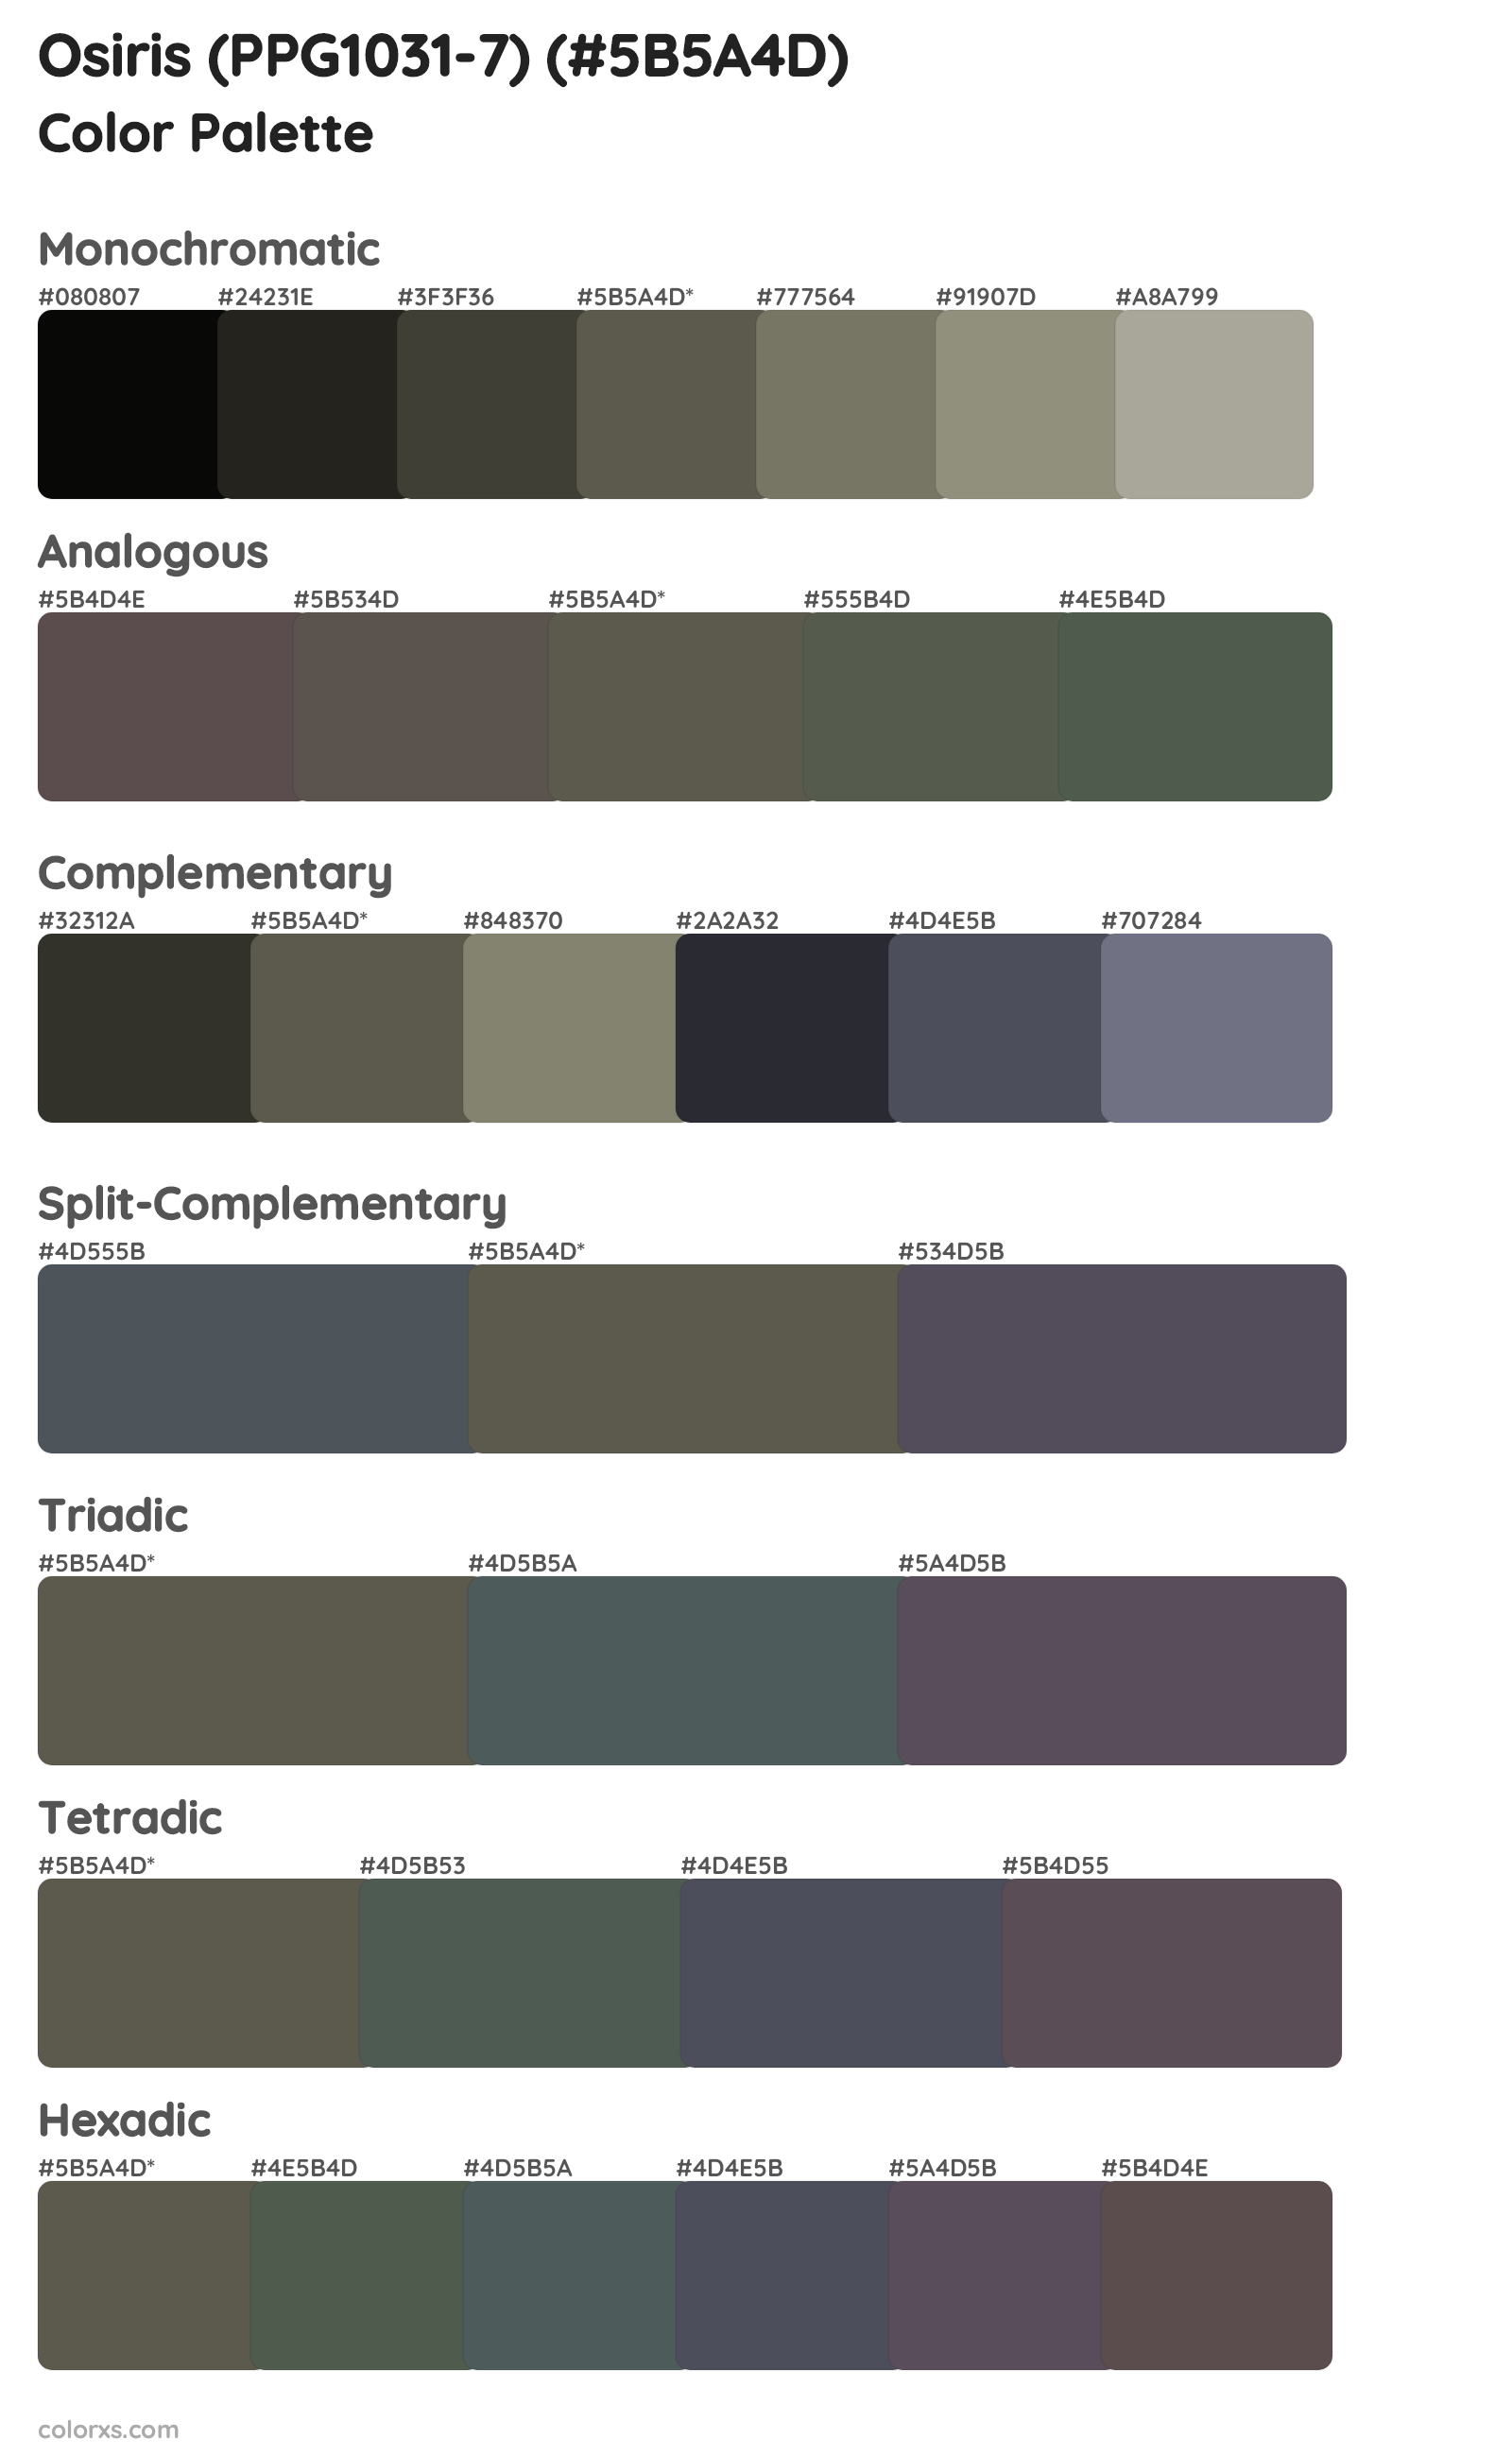 Osiris (PPG1031-7) Color Scheme Palettes